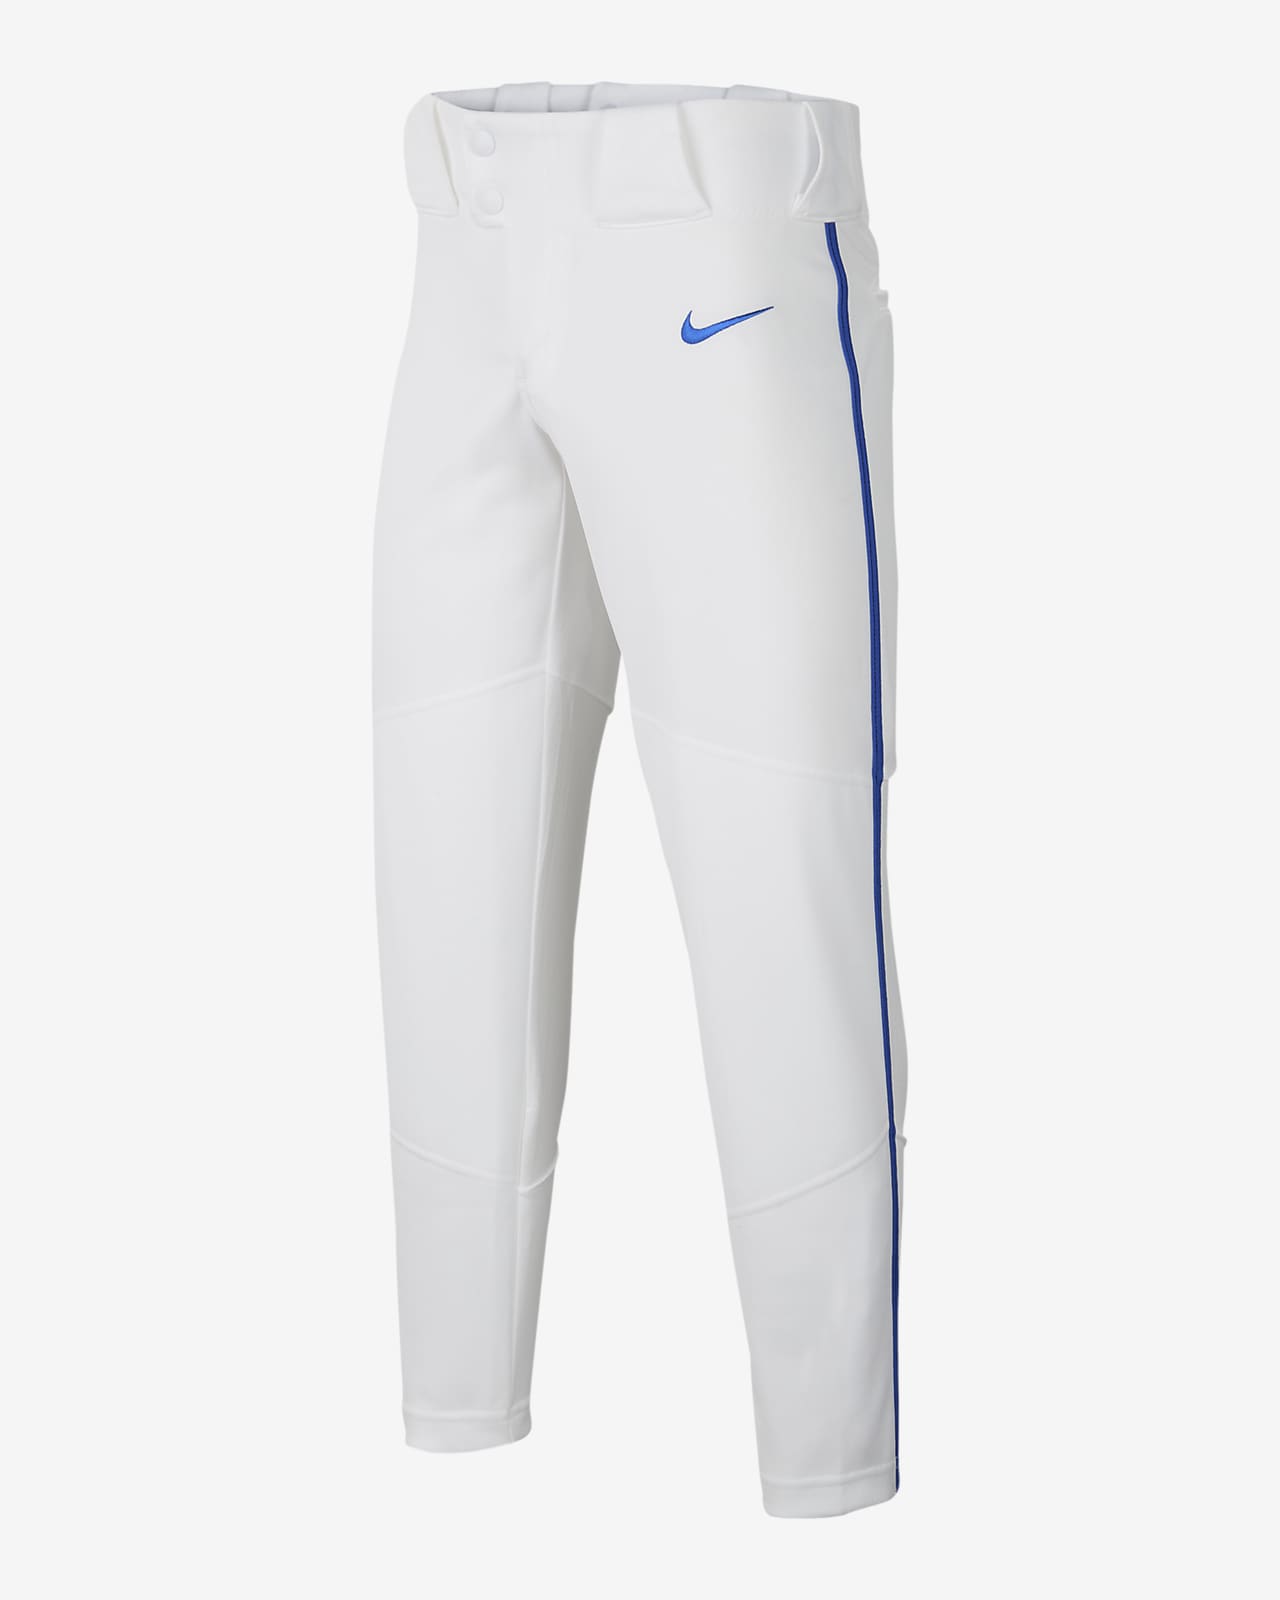 Pantalones de béisbol para niño talla grande Nike Vapor Select